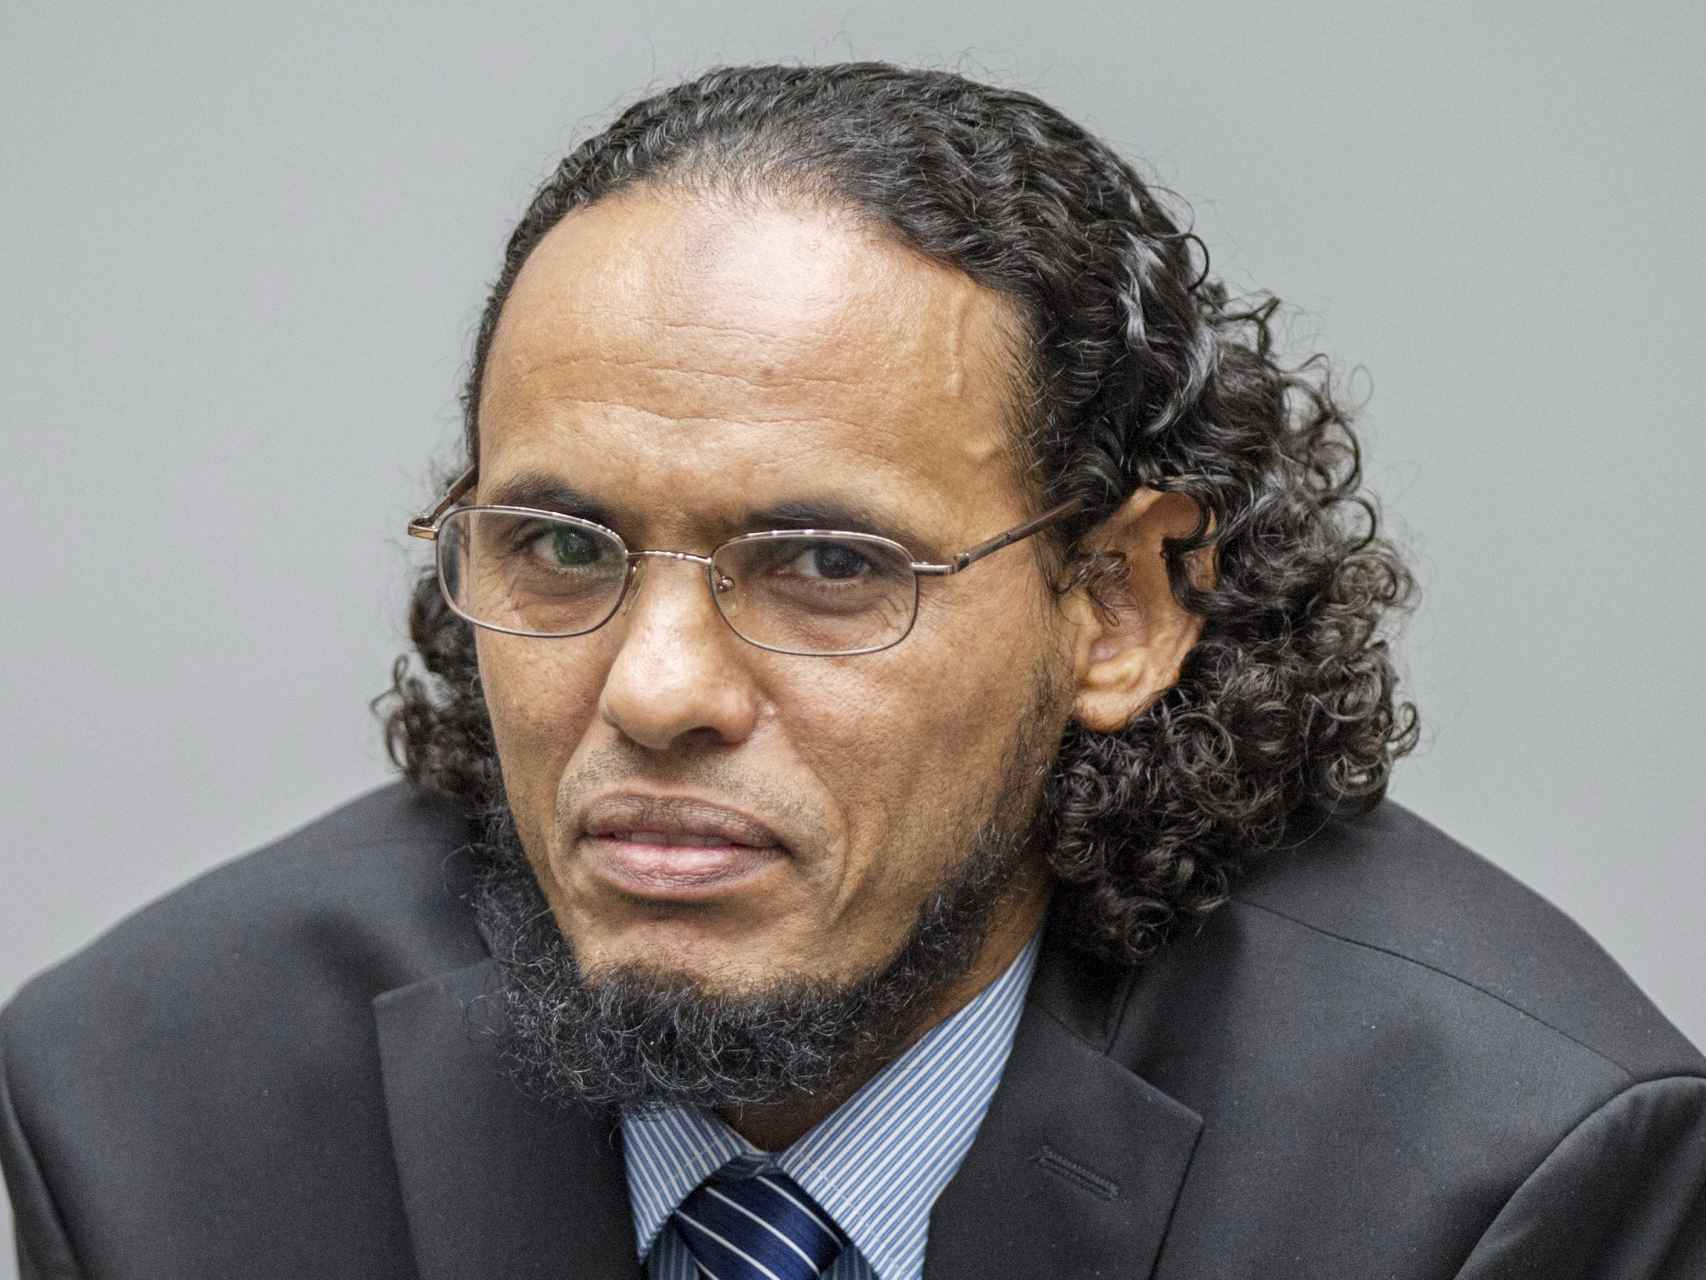 El acusado Achmad al Mahdi al Faqi, alias Abu Turab, comparece ante la Corte Penal Internacional.